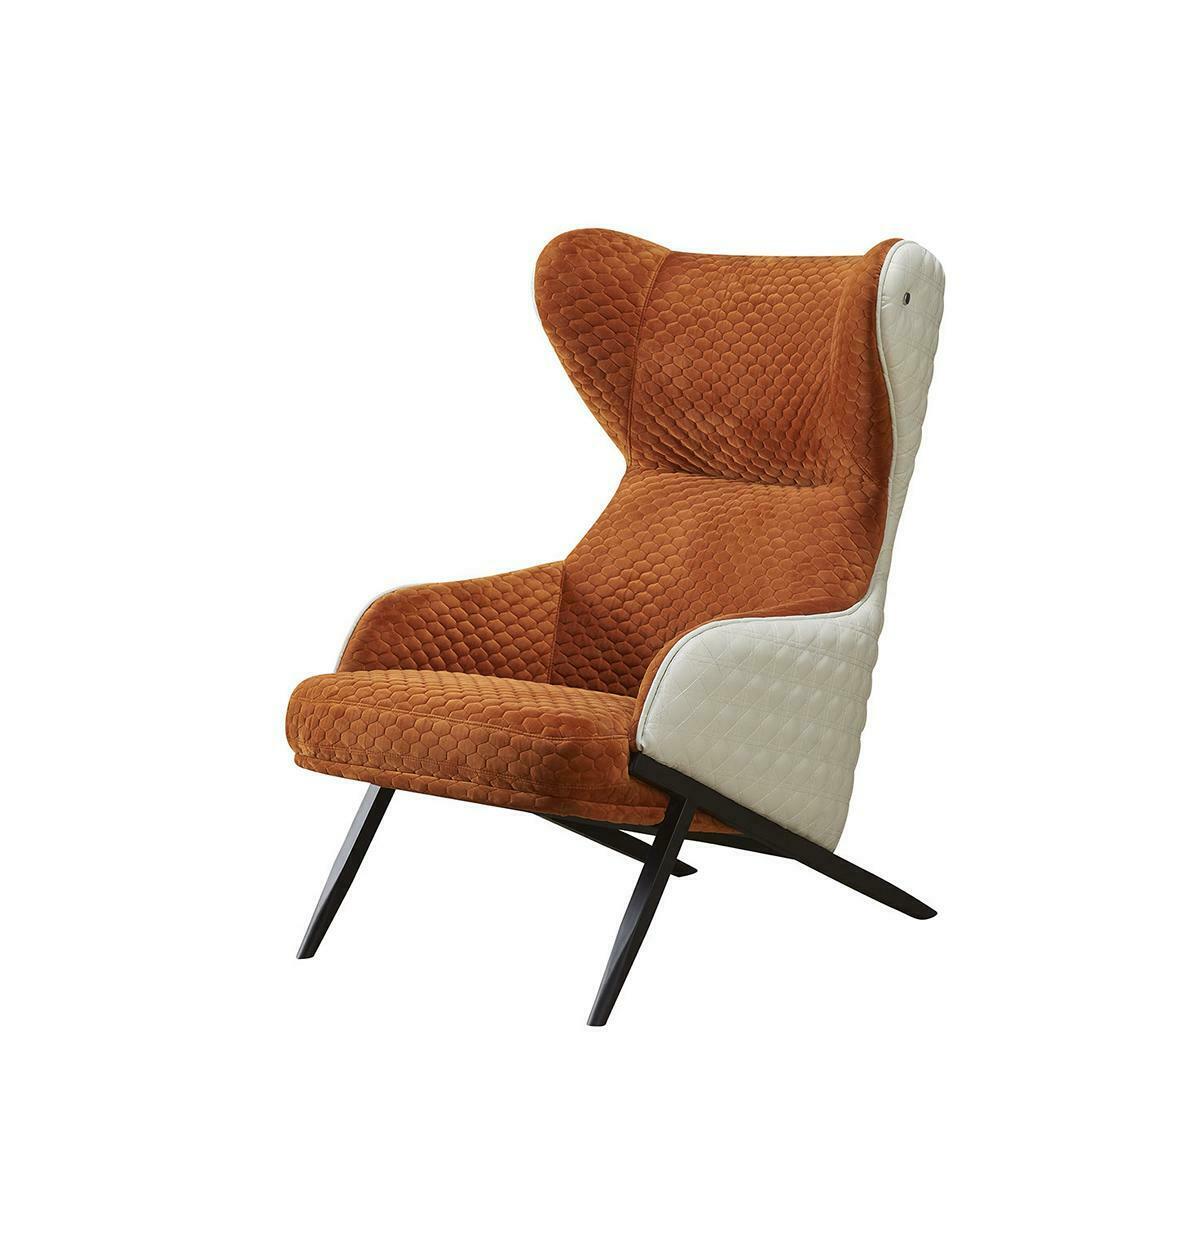 Luxus Design Möbel Stühle Moderner Design Sessel Deko Textil Wohnzimmer